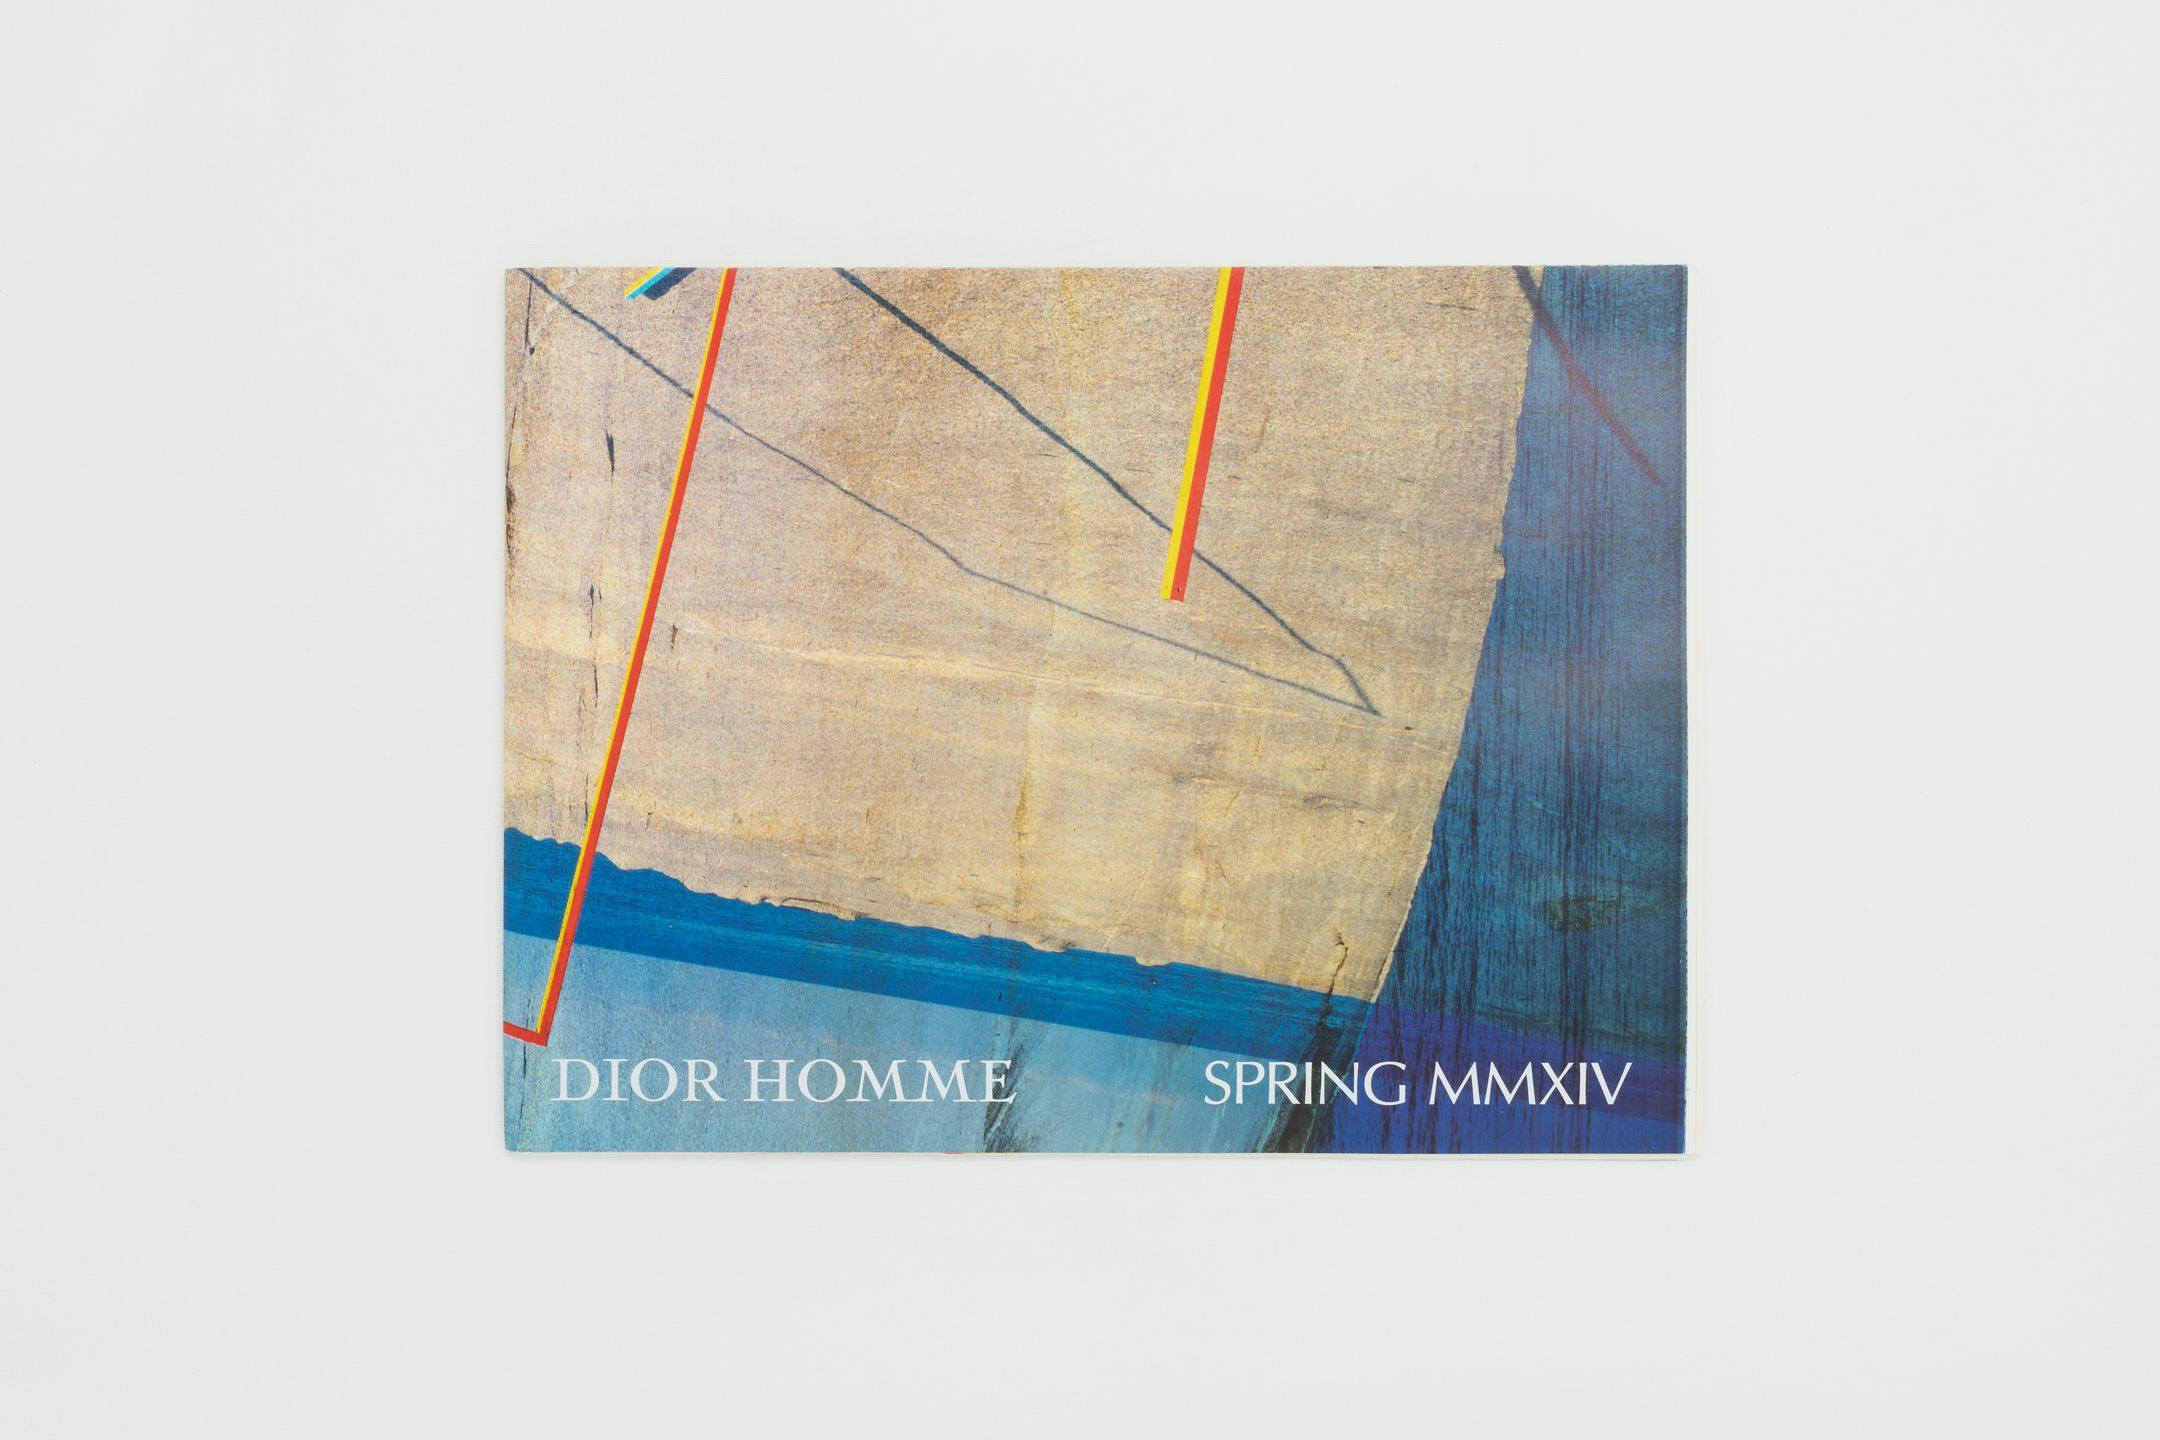 Dior Homme Spring MMXIV